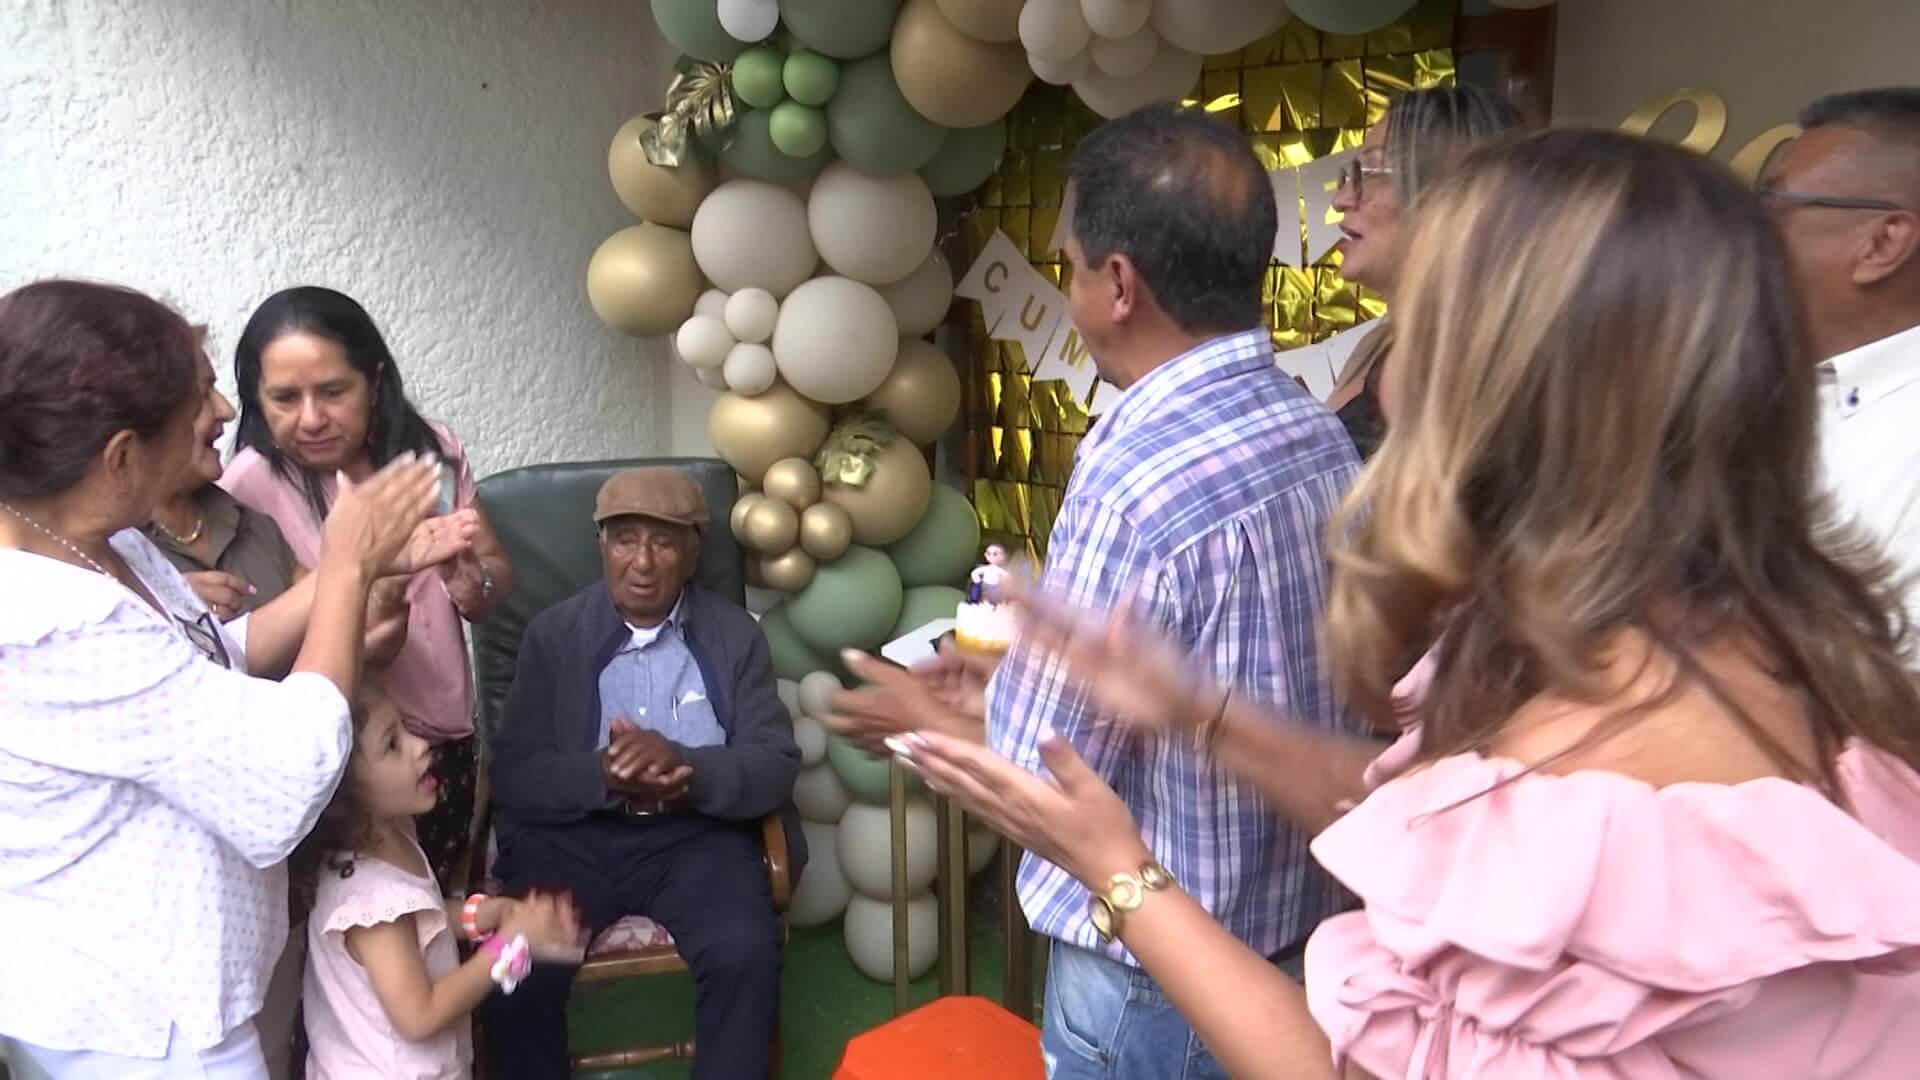 Carlos Enrique, el siderence que festejó 101 años de vida